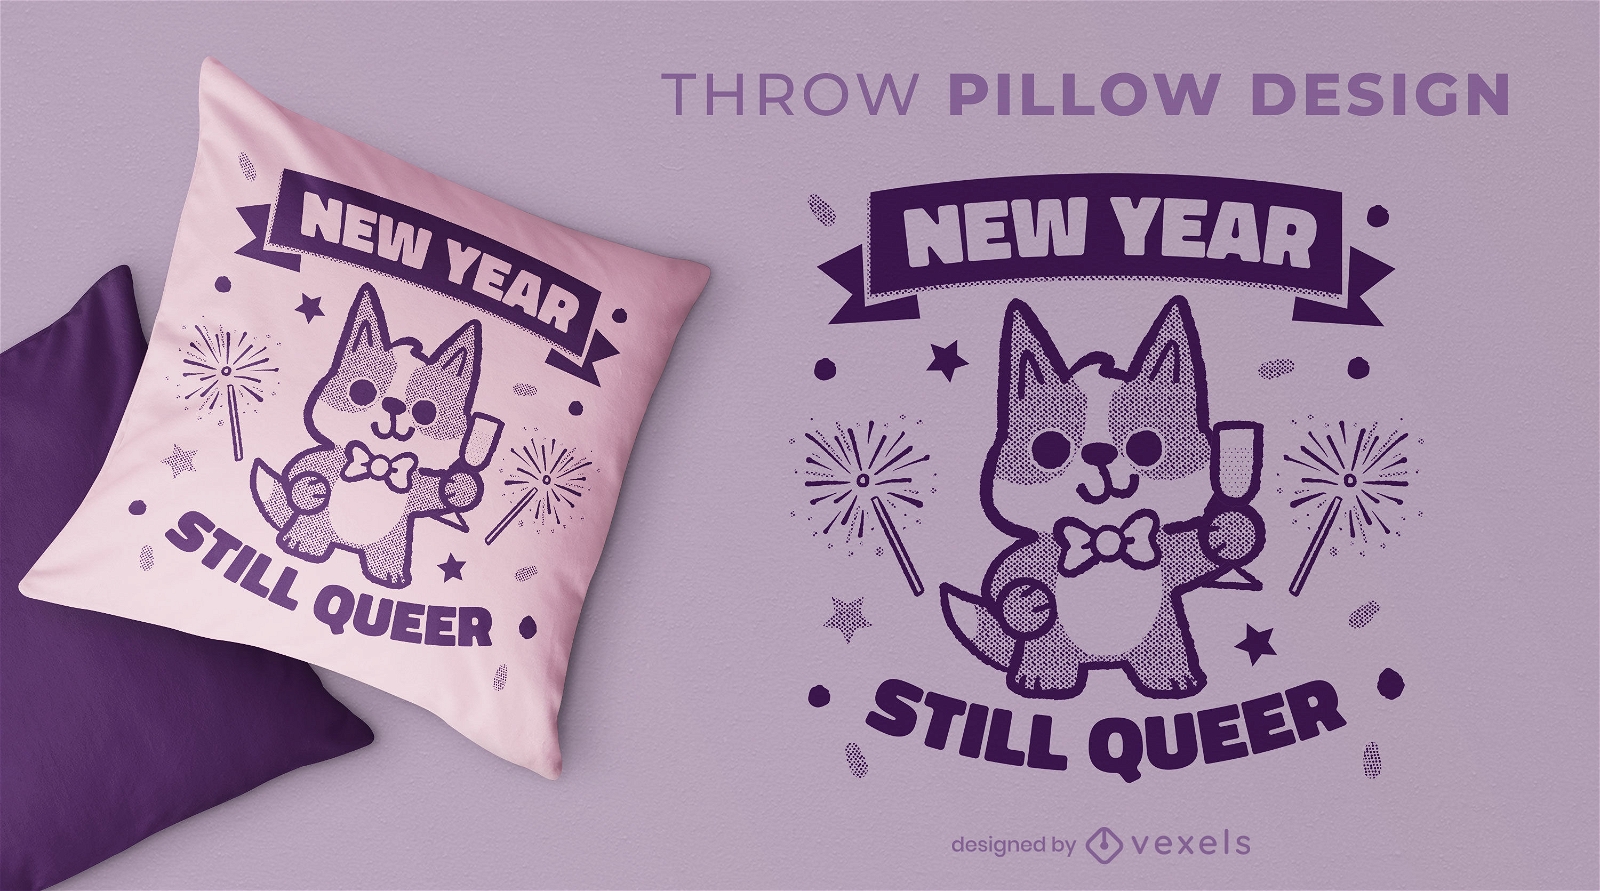 Diseño de almohada de año nuevo todavía queer